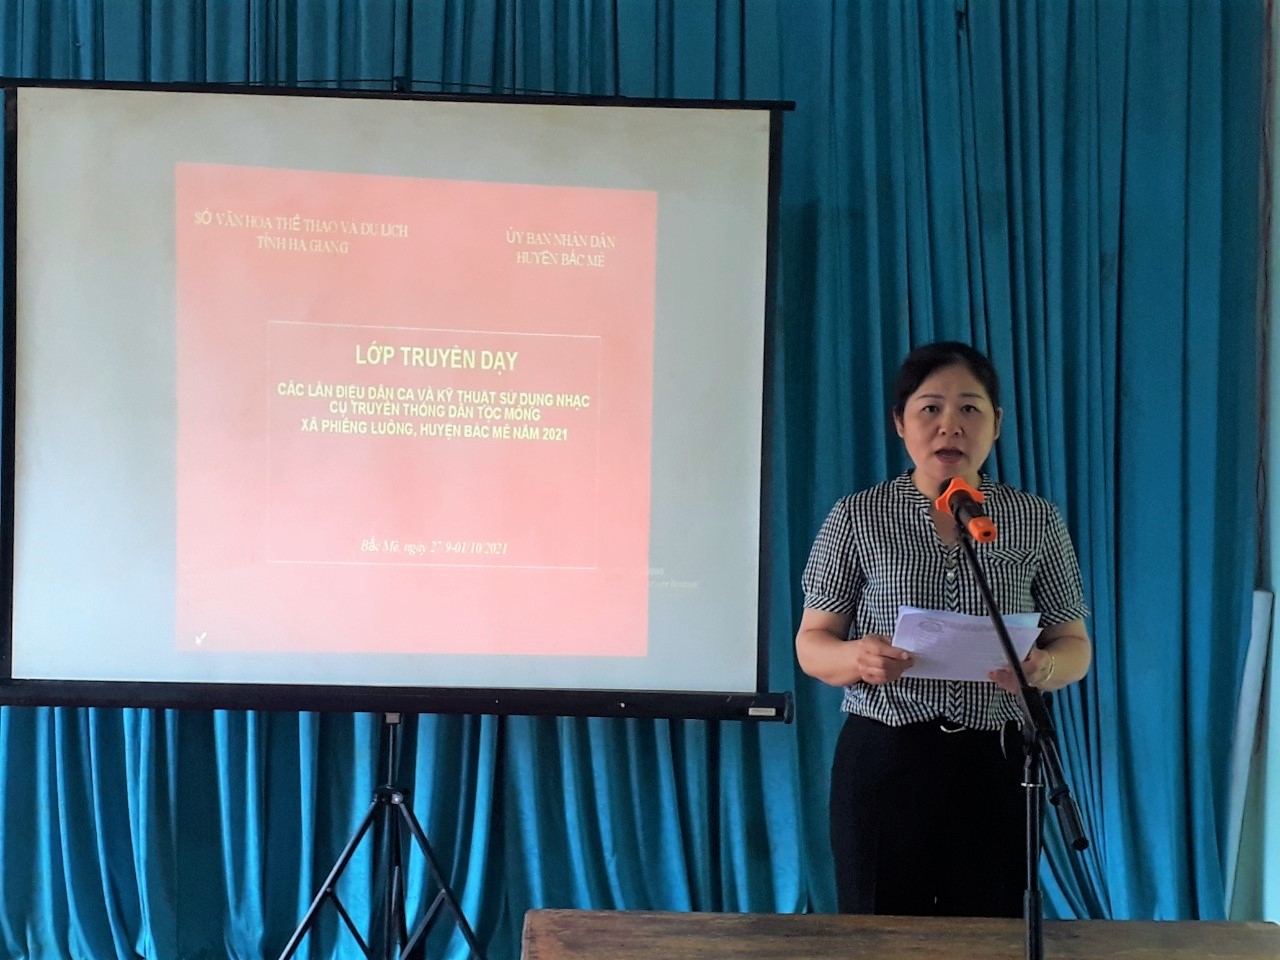 Khai mạc lớp truyền dạy các làn điệu dân ca, kỹ thuật sử dụng nhạc cụ truyền thống dân tộc Mông tại thôn Phiêng Luông xã Phiêng Luông 2021